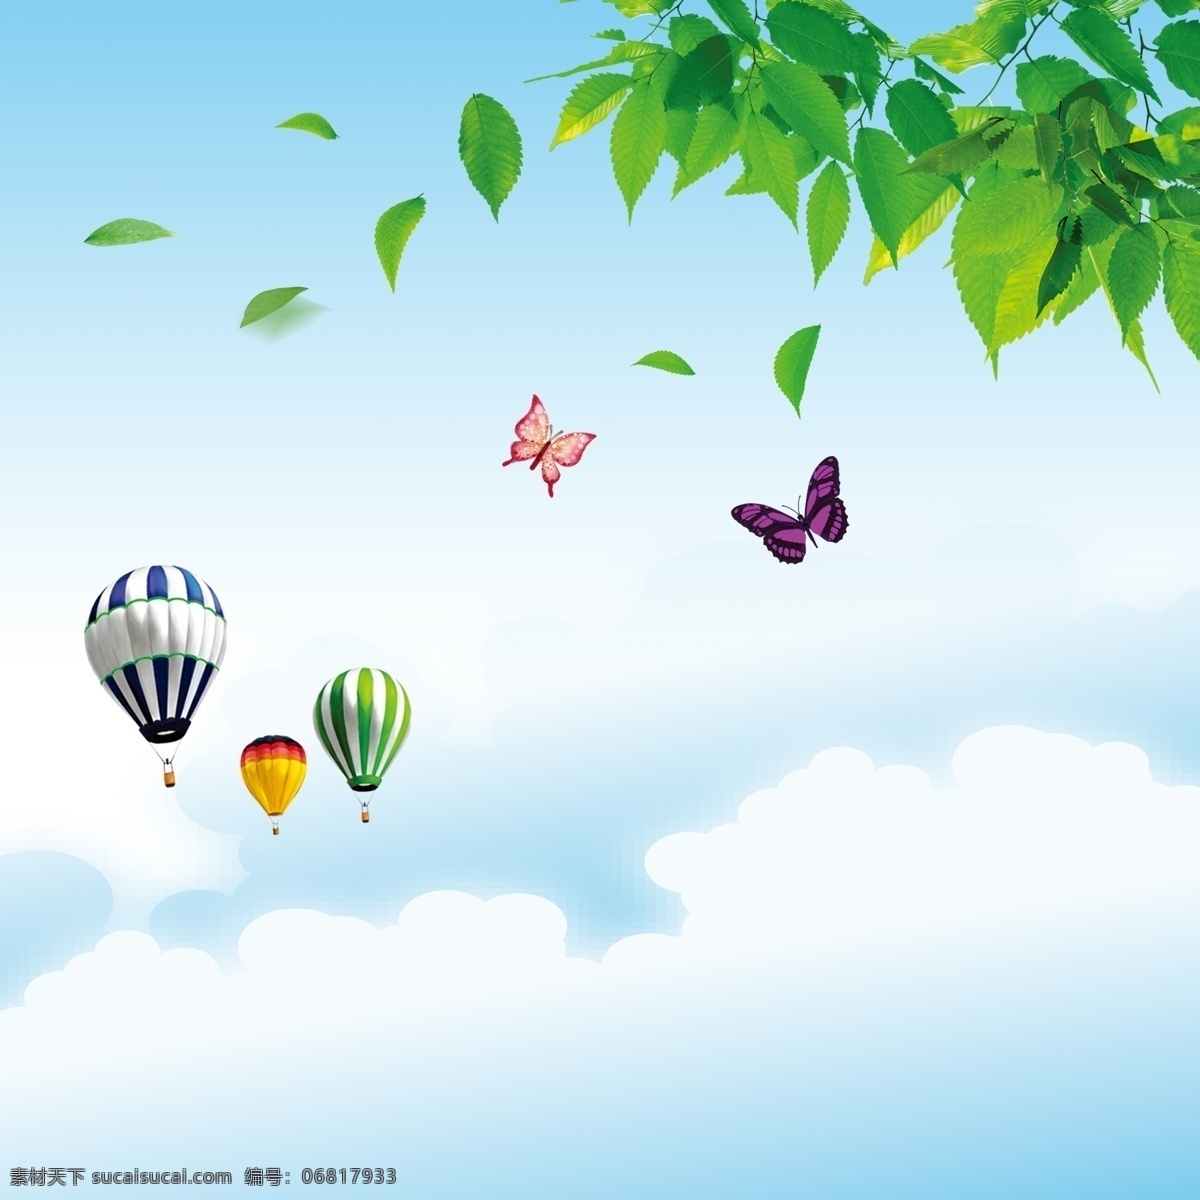 蓝天 白云 热气球 蝴蝶 树叶 蓝天白云 树叶素材